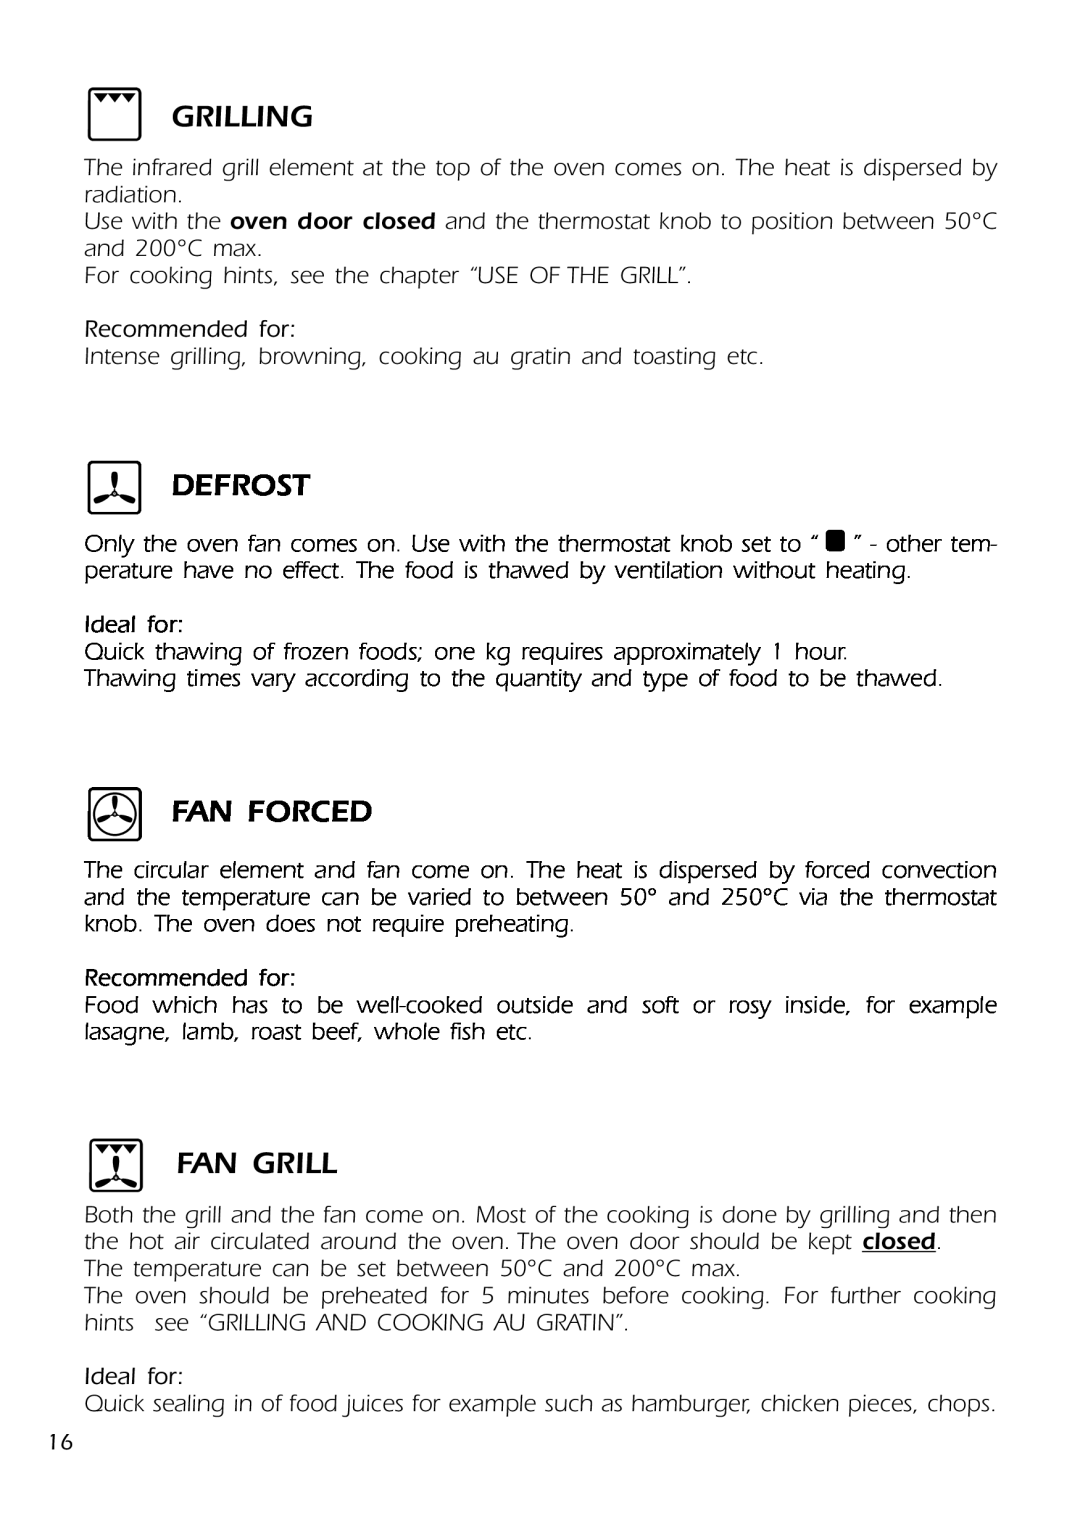 DeLonghi DMFPSII manual Grilling, Defrost, Fan Forced, Fan Grill 